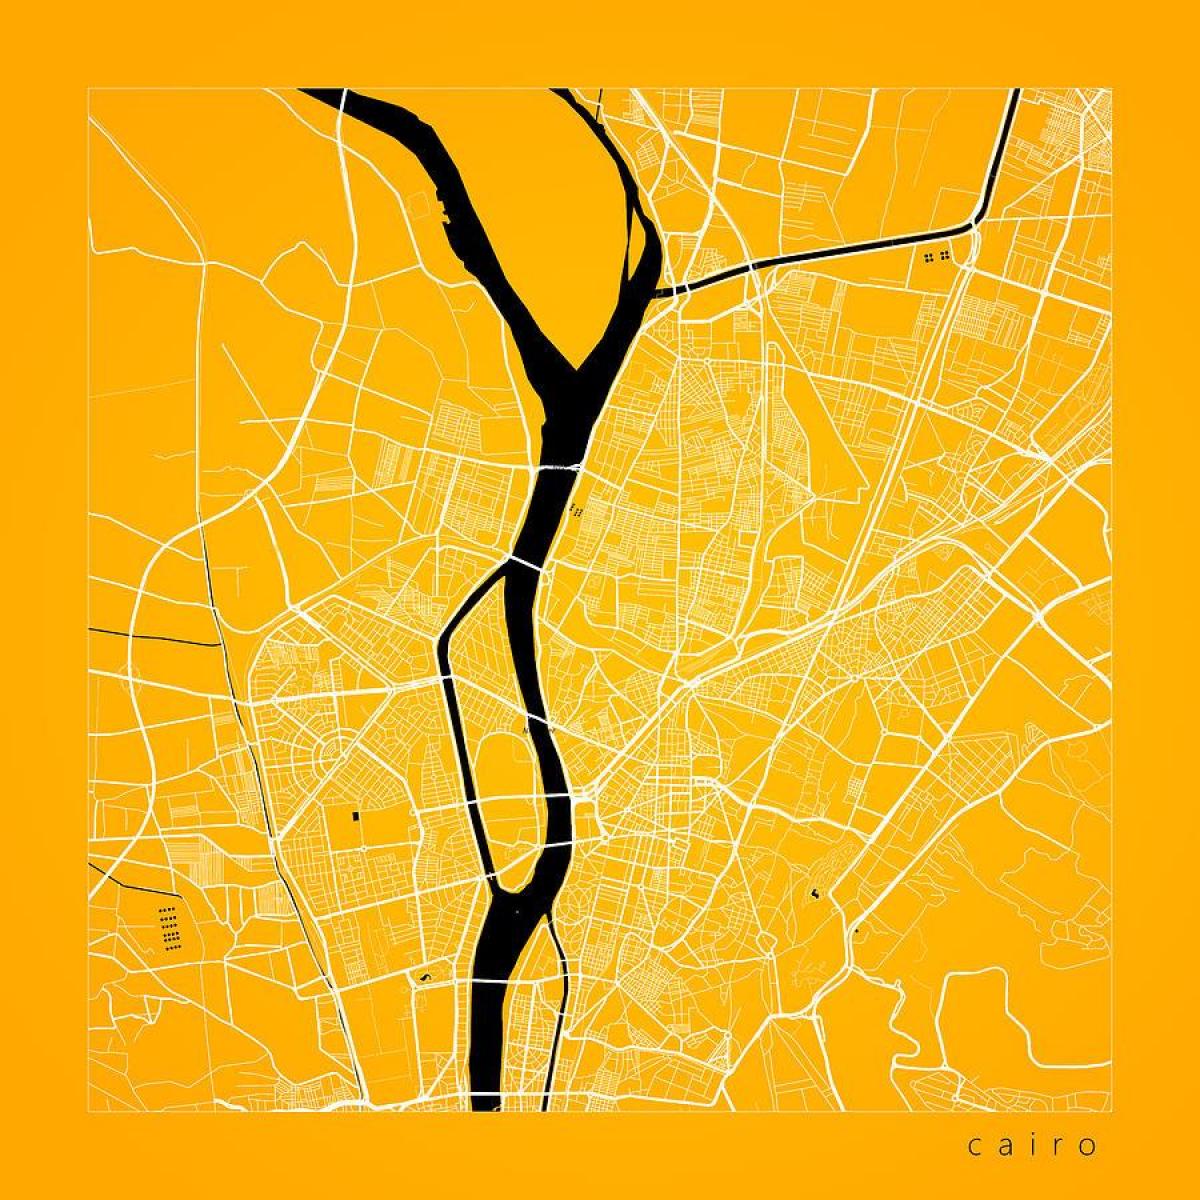 Mapu káhiry ulici